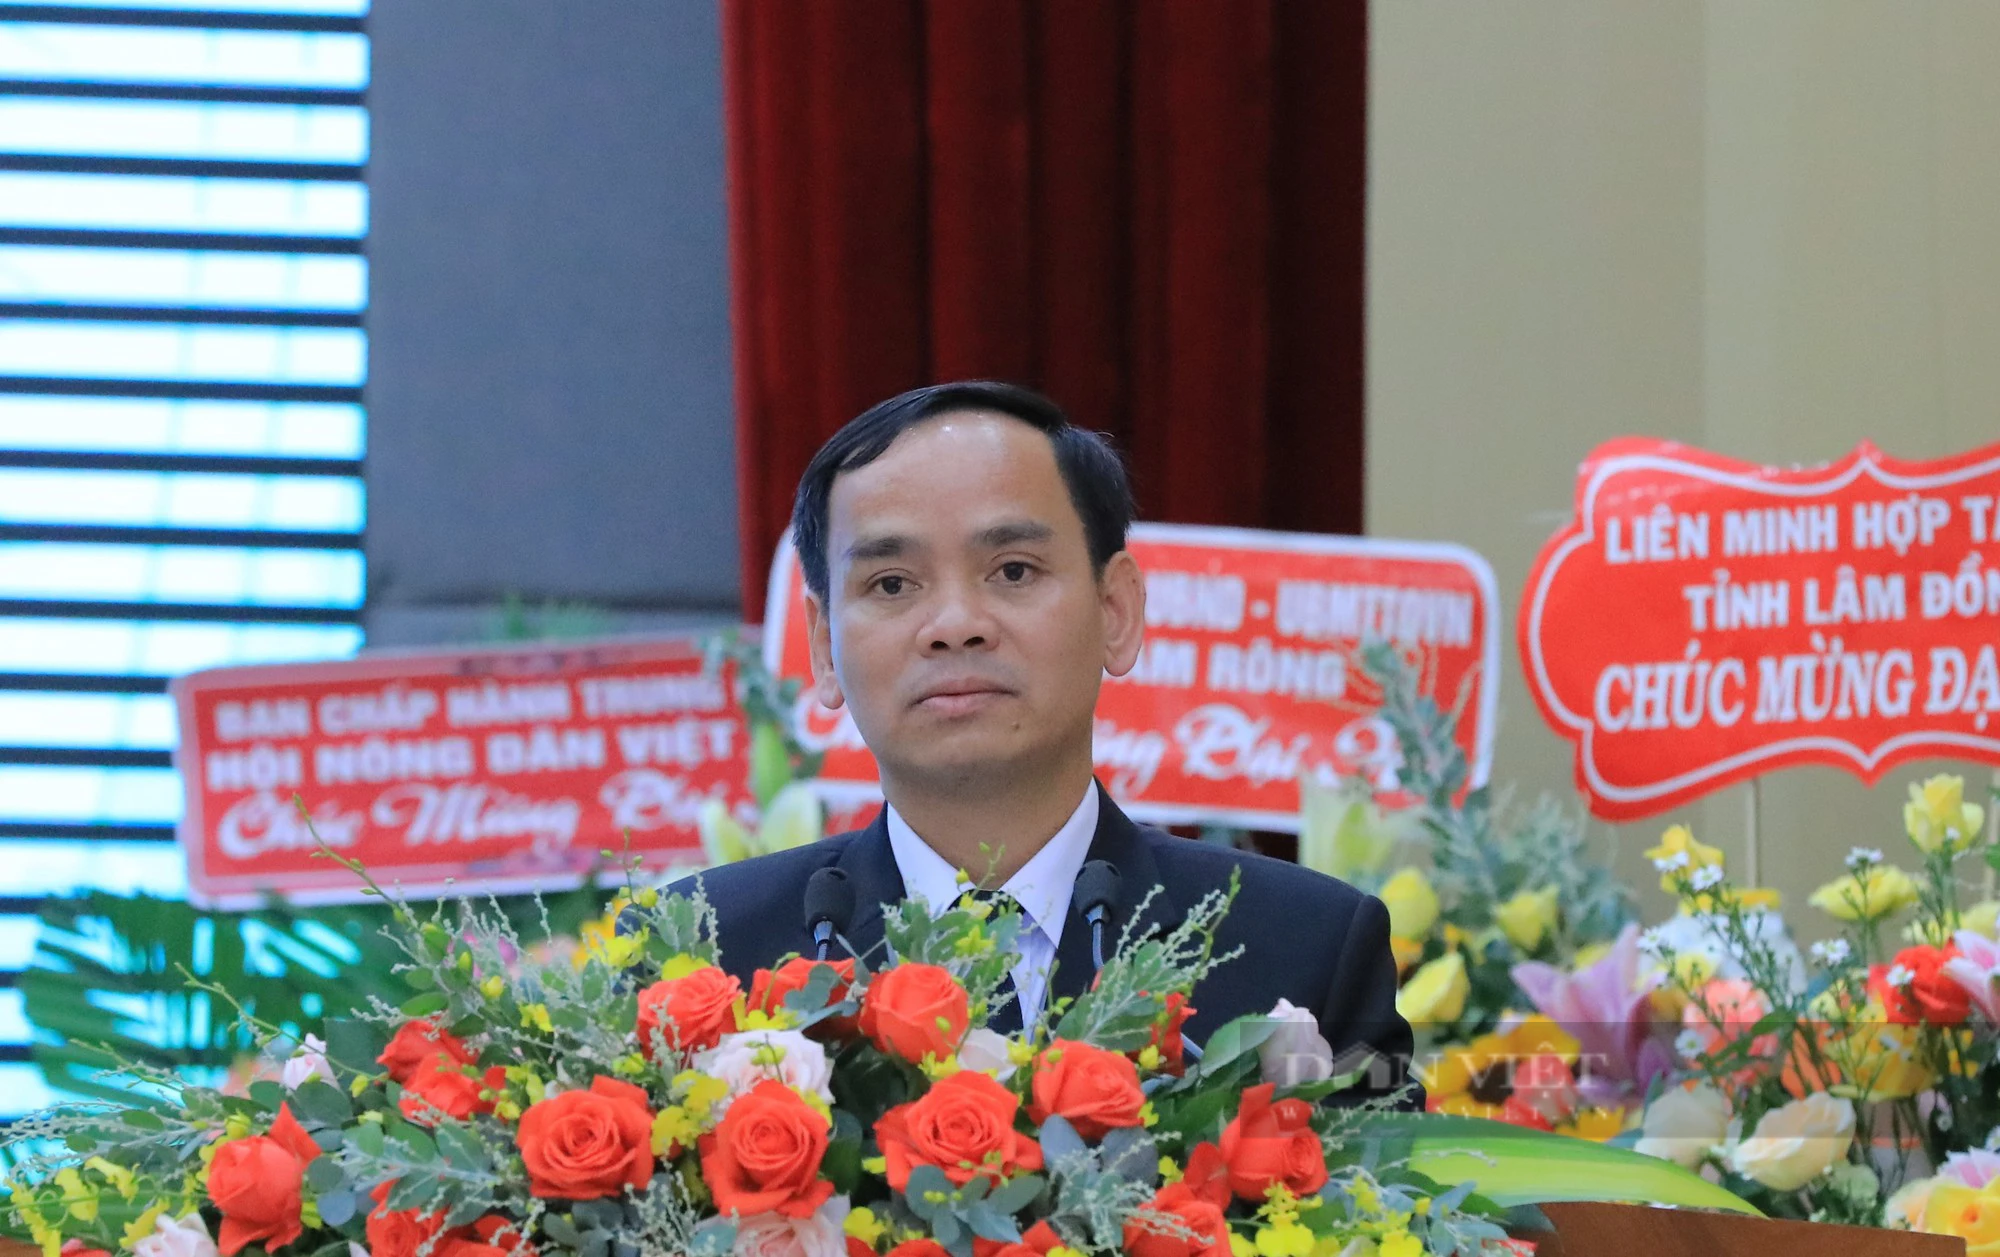 Hội Nông dân tỉnh Lâm Đồng: Nghị quyết 46 là sự quan tâm đến cán bộ, hội viên nông dân của Đảng và Nhà nước - Ảnh 1.